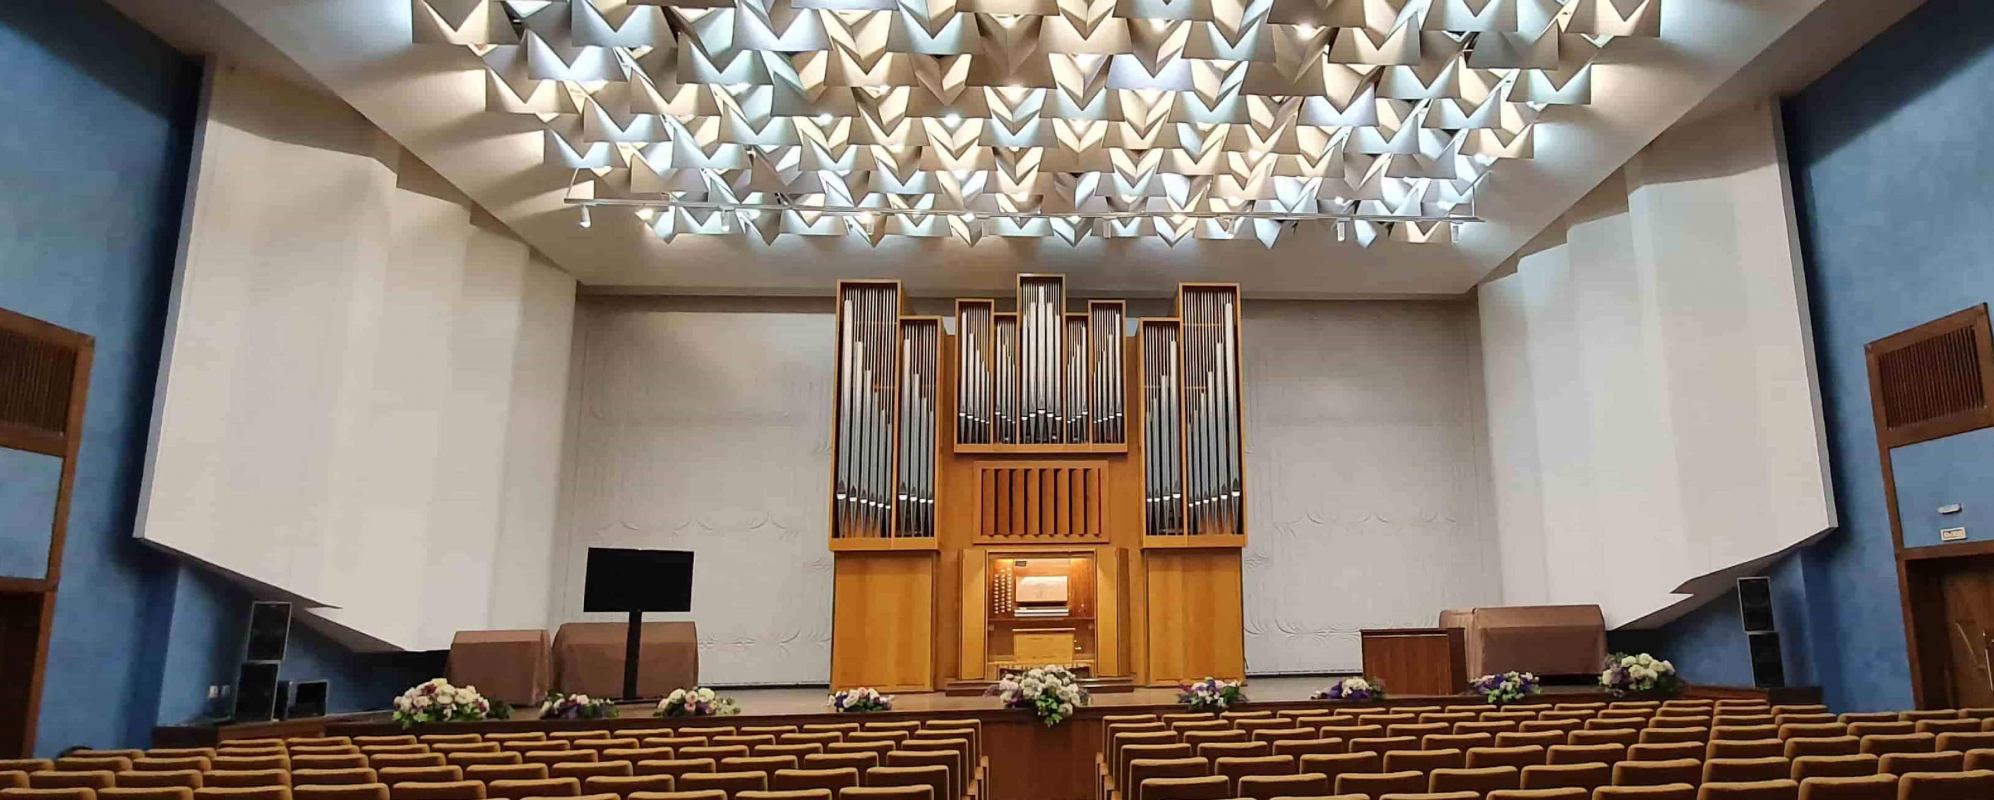 Фотографии концертного зала Органный зал Государственной филармонии Кузбасса